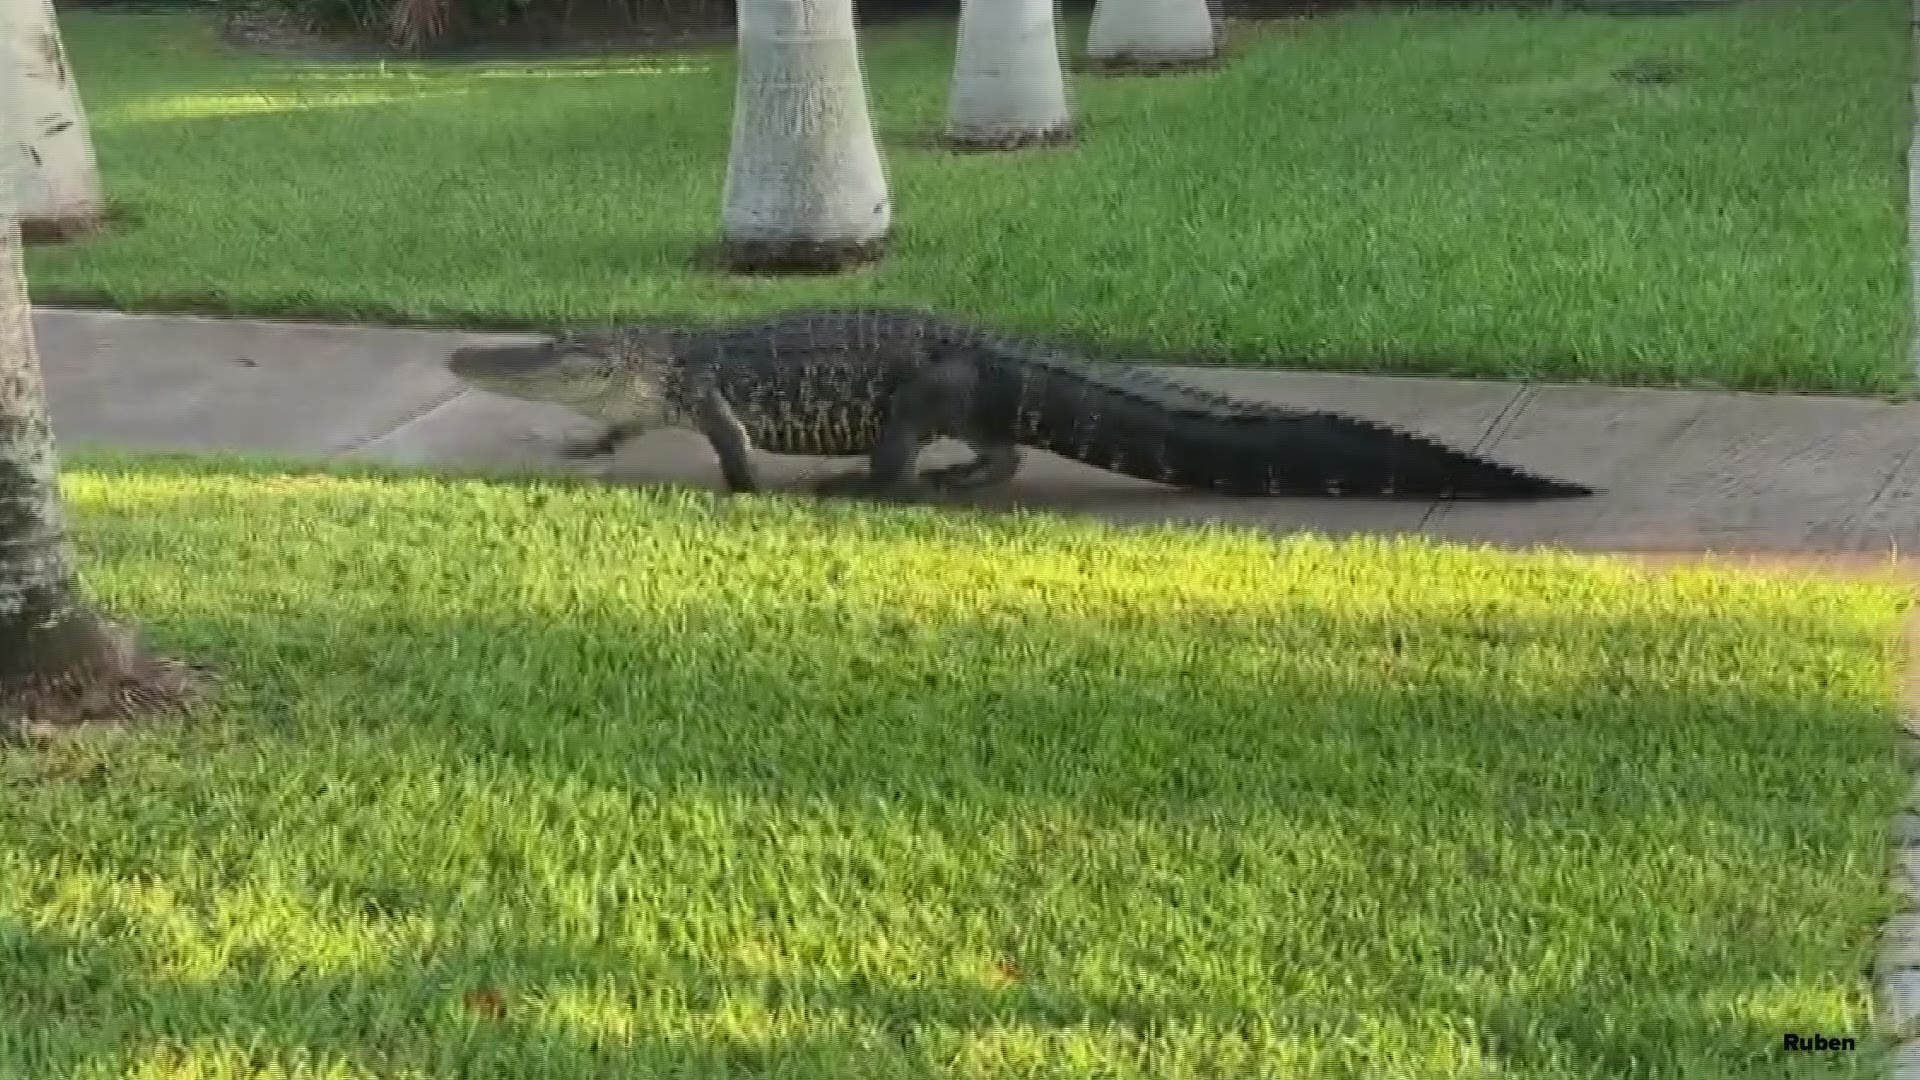 Sidewalk Surfer - The Independent Florida Alligator